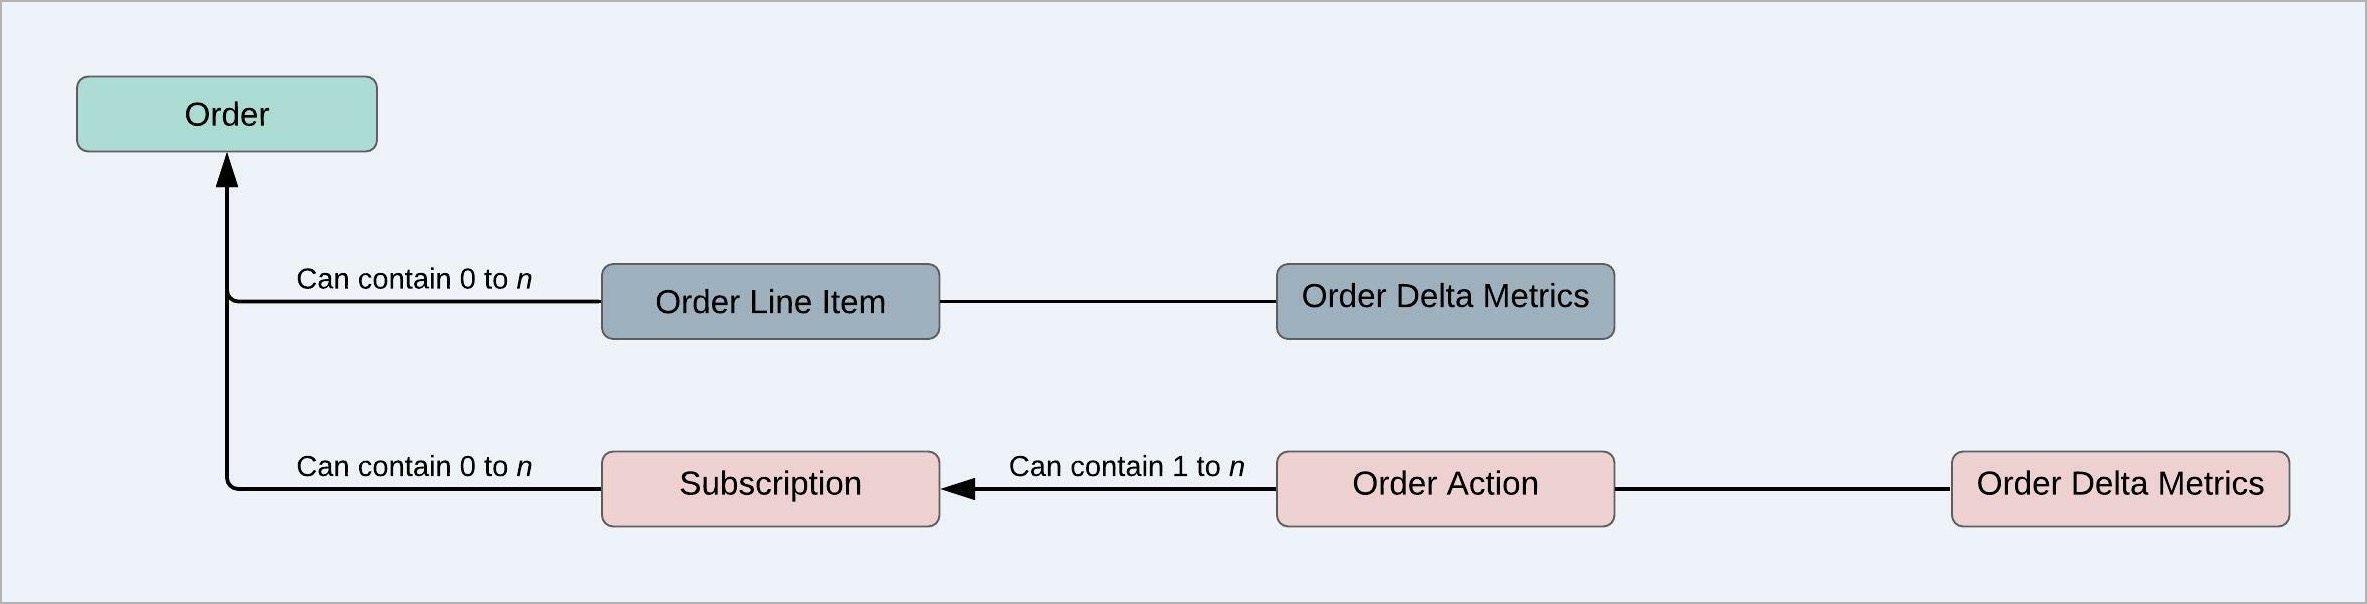 OrderLineItem_Order_OrderDeltaMetrics.jpeg